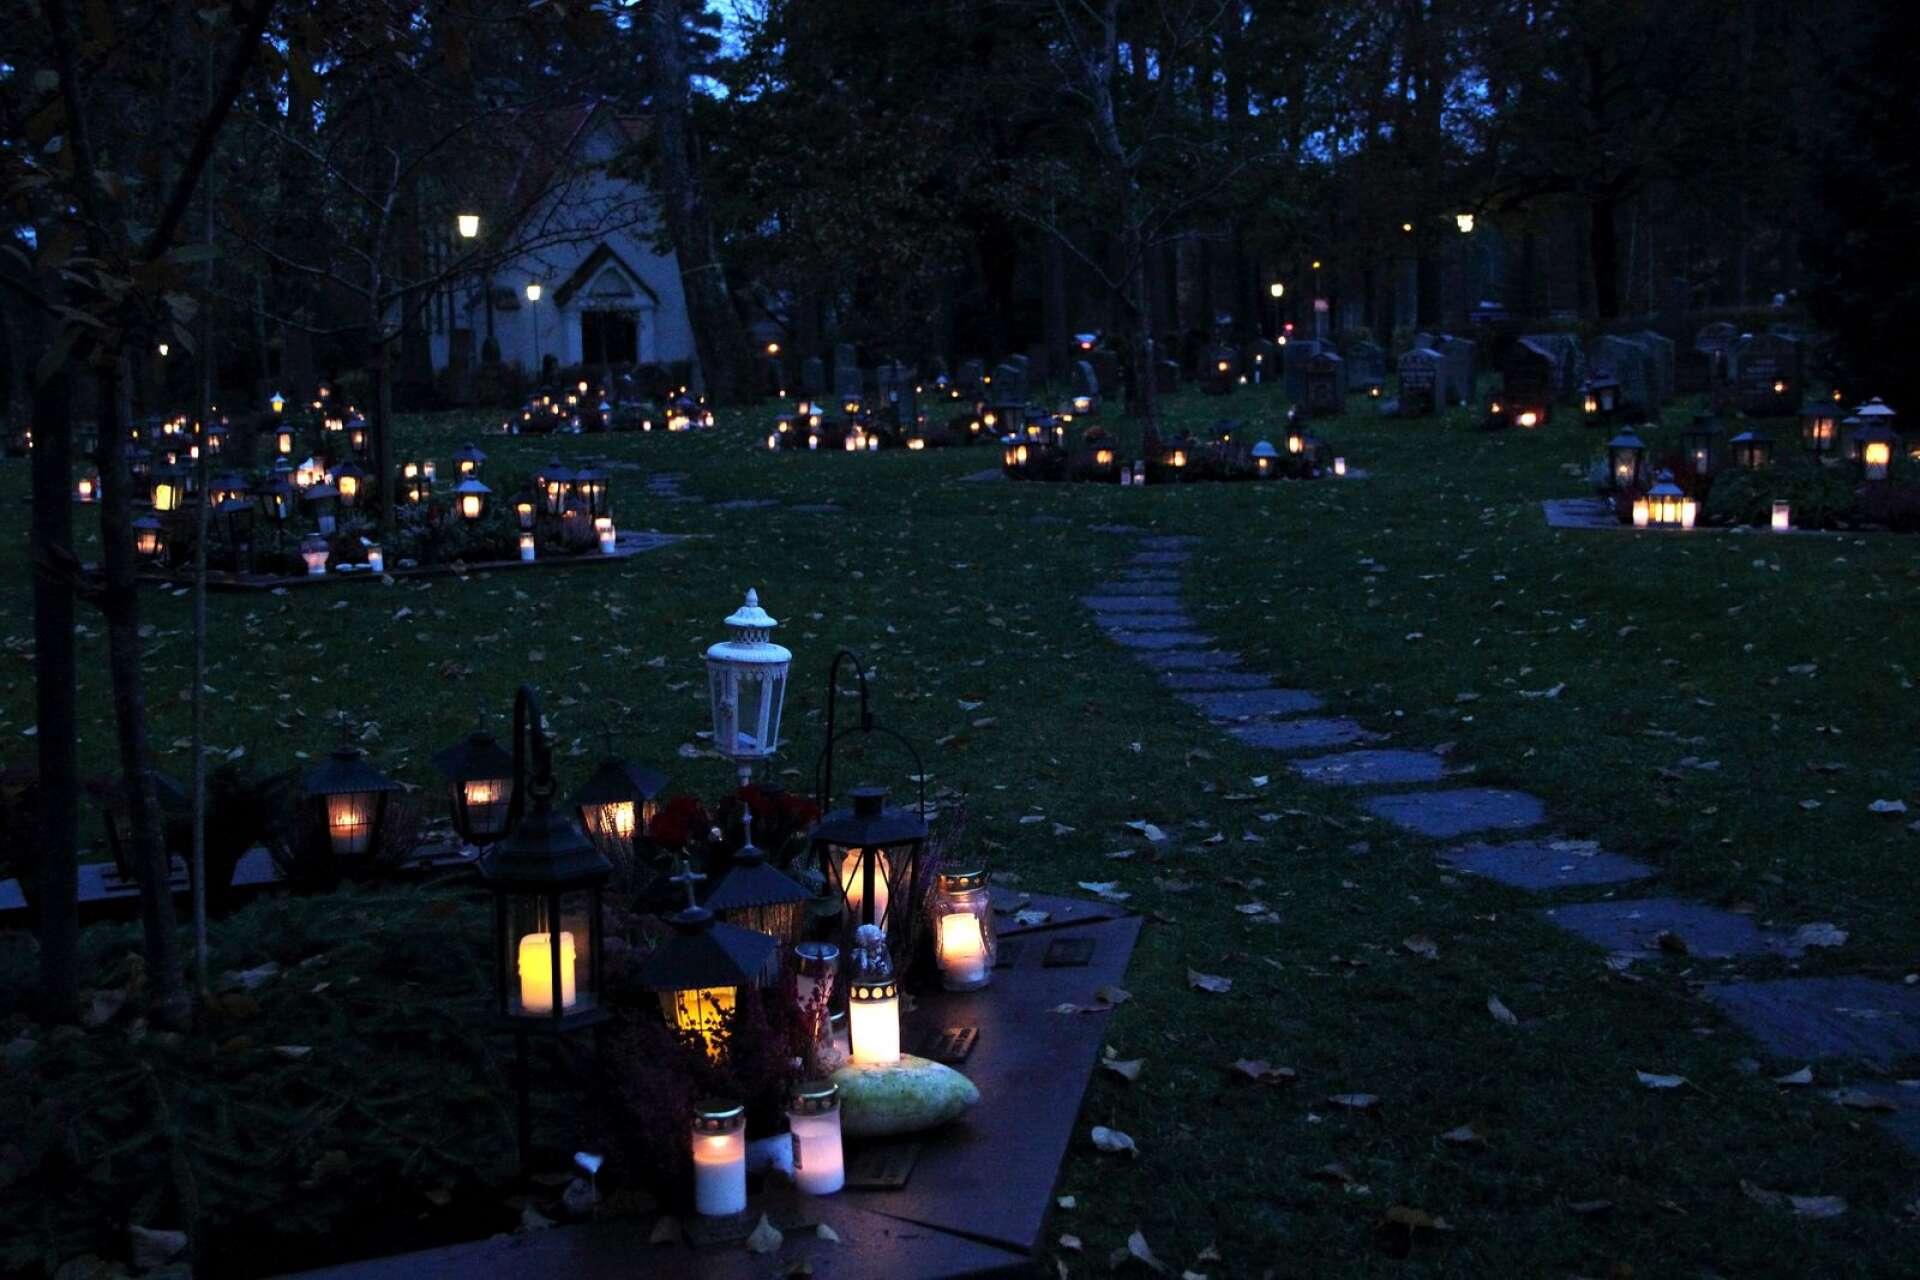 De som i stället för att tända ljus på kyrkogården väljer att tända inne i kyrkan, hänvisas i helgen till Fredens kapell, då Degerfors kyrka endast är öppen för inbjudna till minnesgudstjänst.